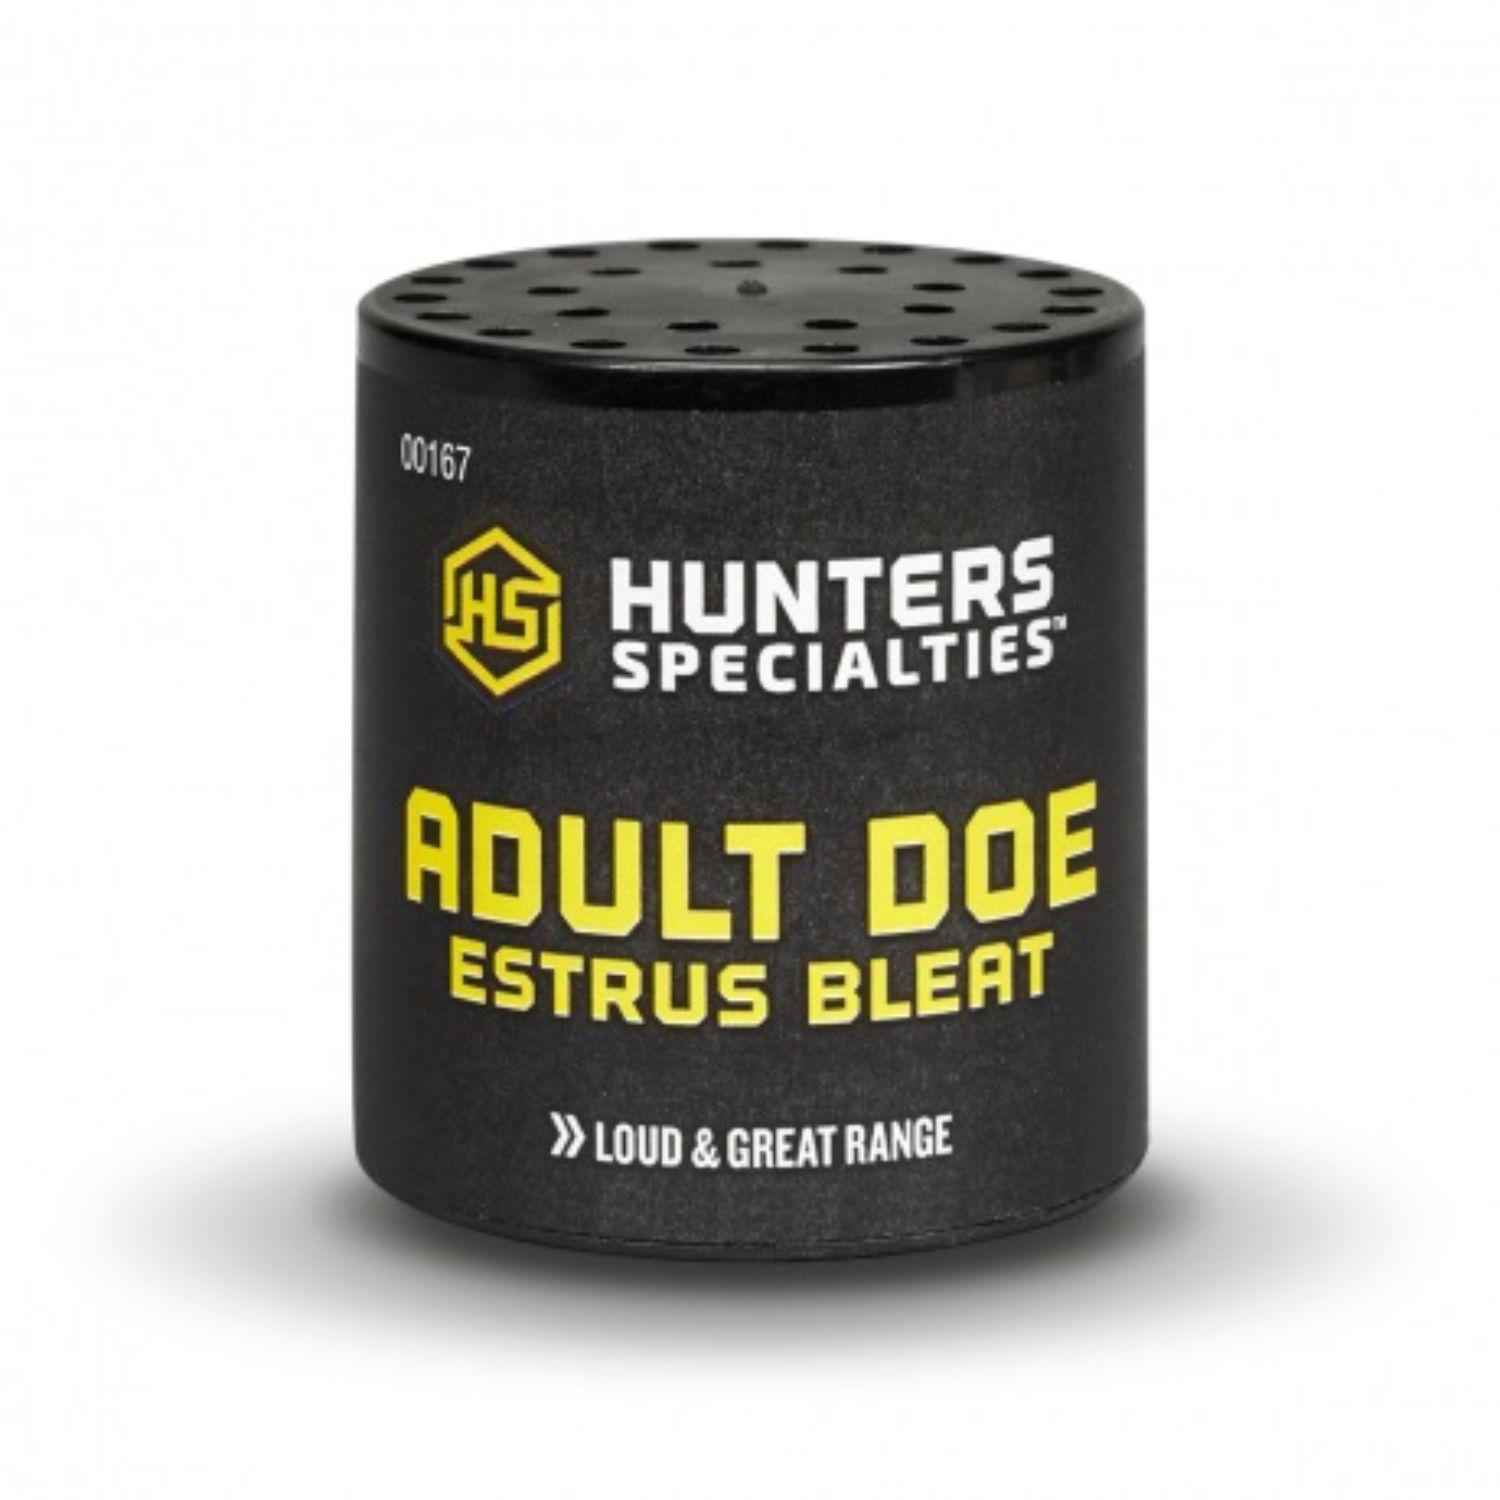 Hunters Specialties Bleat Doe Estrus Adult